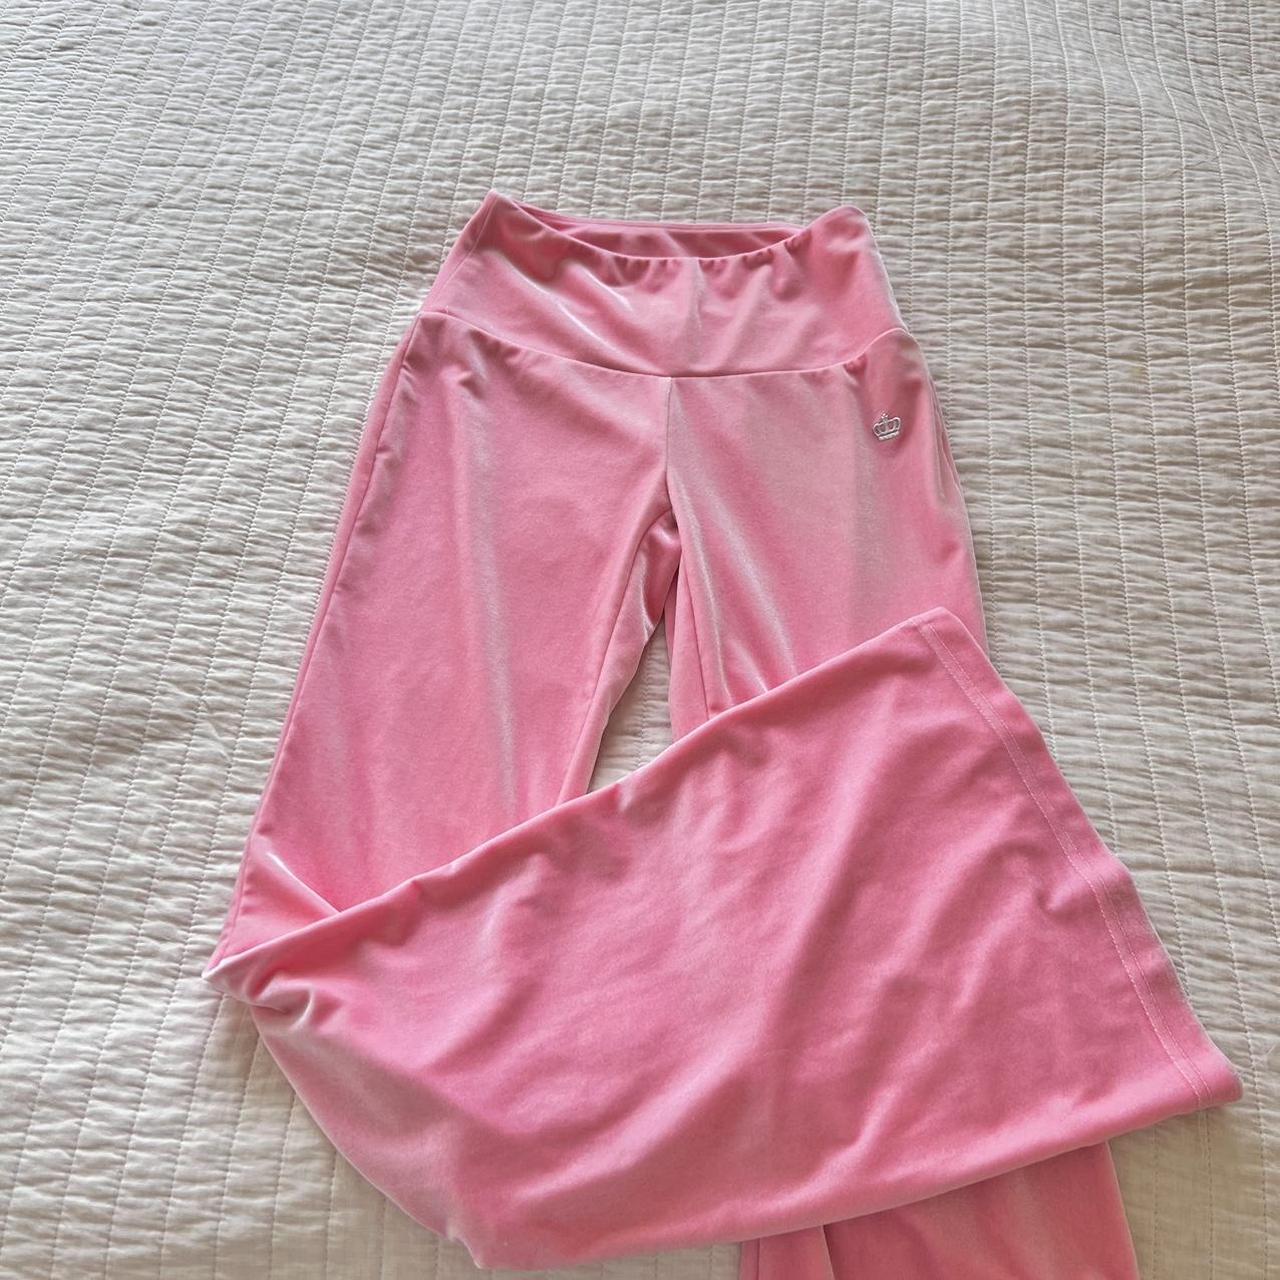 pink velour juicy couture leggings / pants ! -high... - Depop